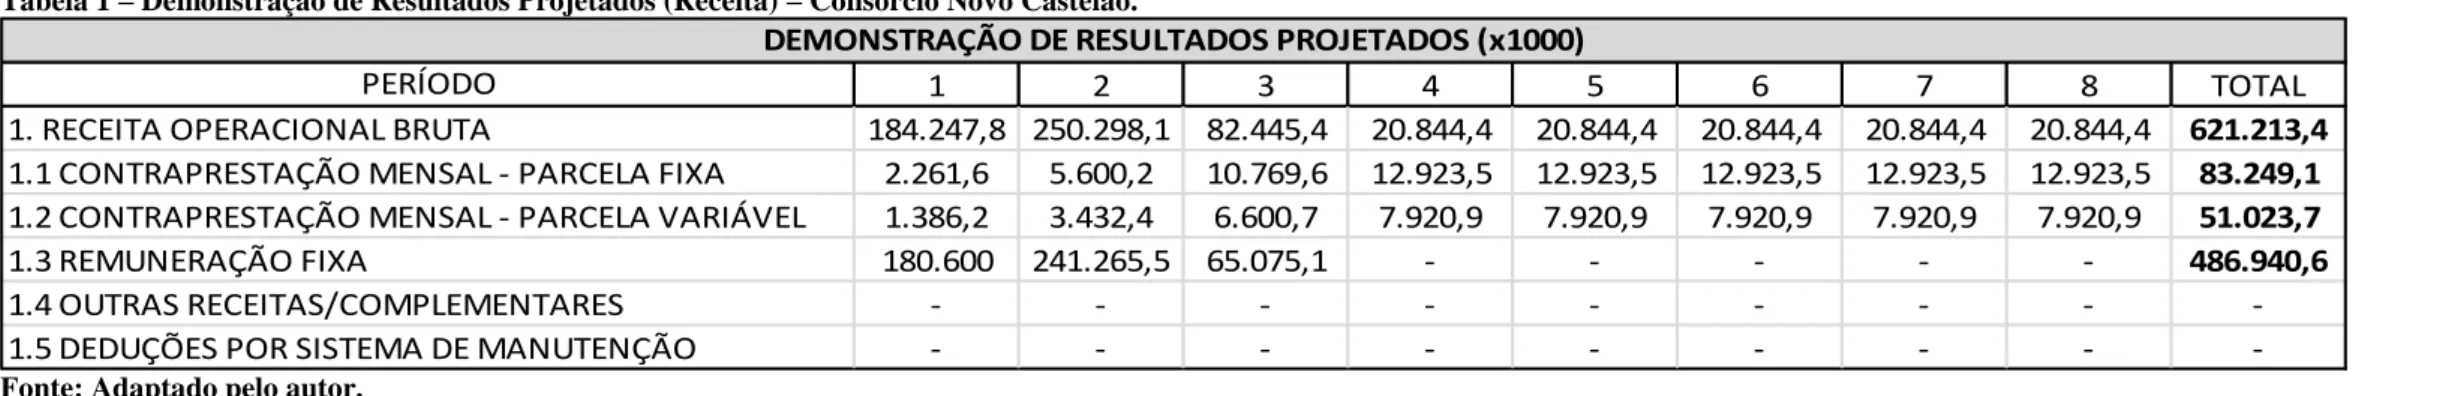 Tabela 2  –  Projeção de Desembolso com Investimentos  –  Consórcio Novo Castelão. 